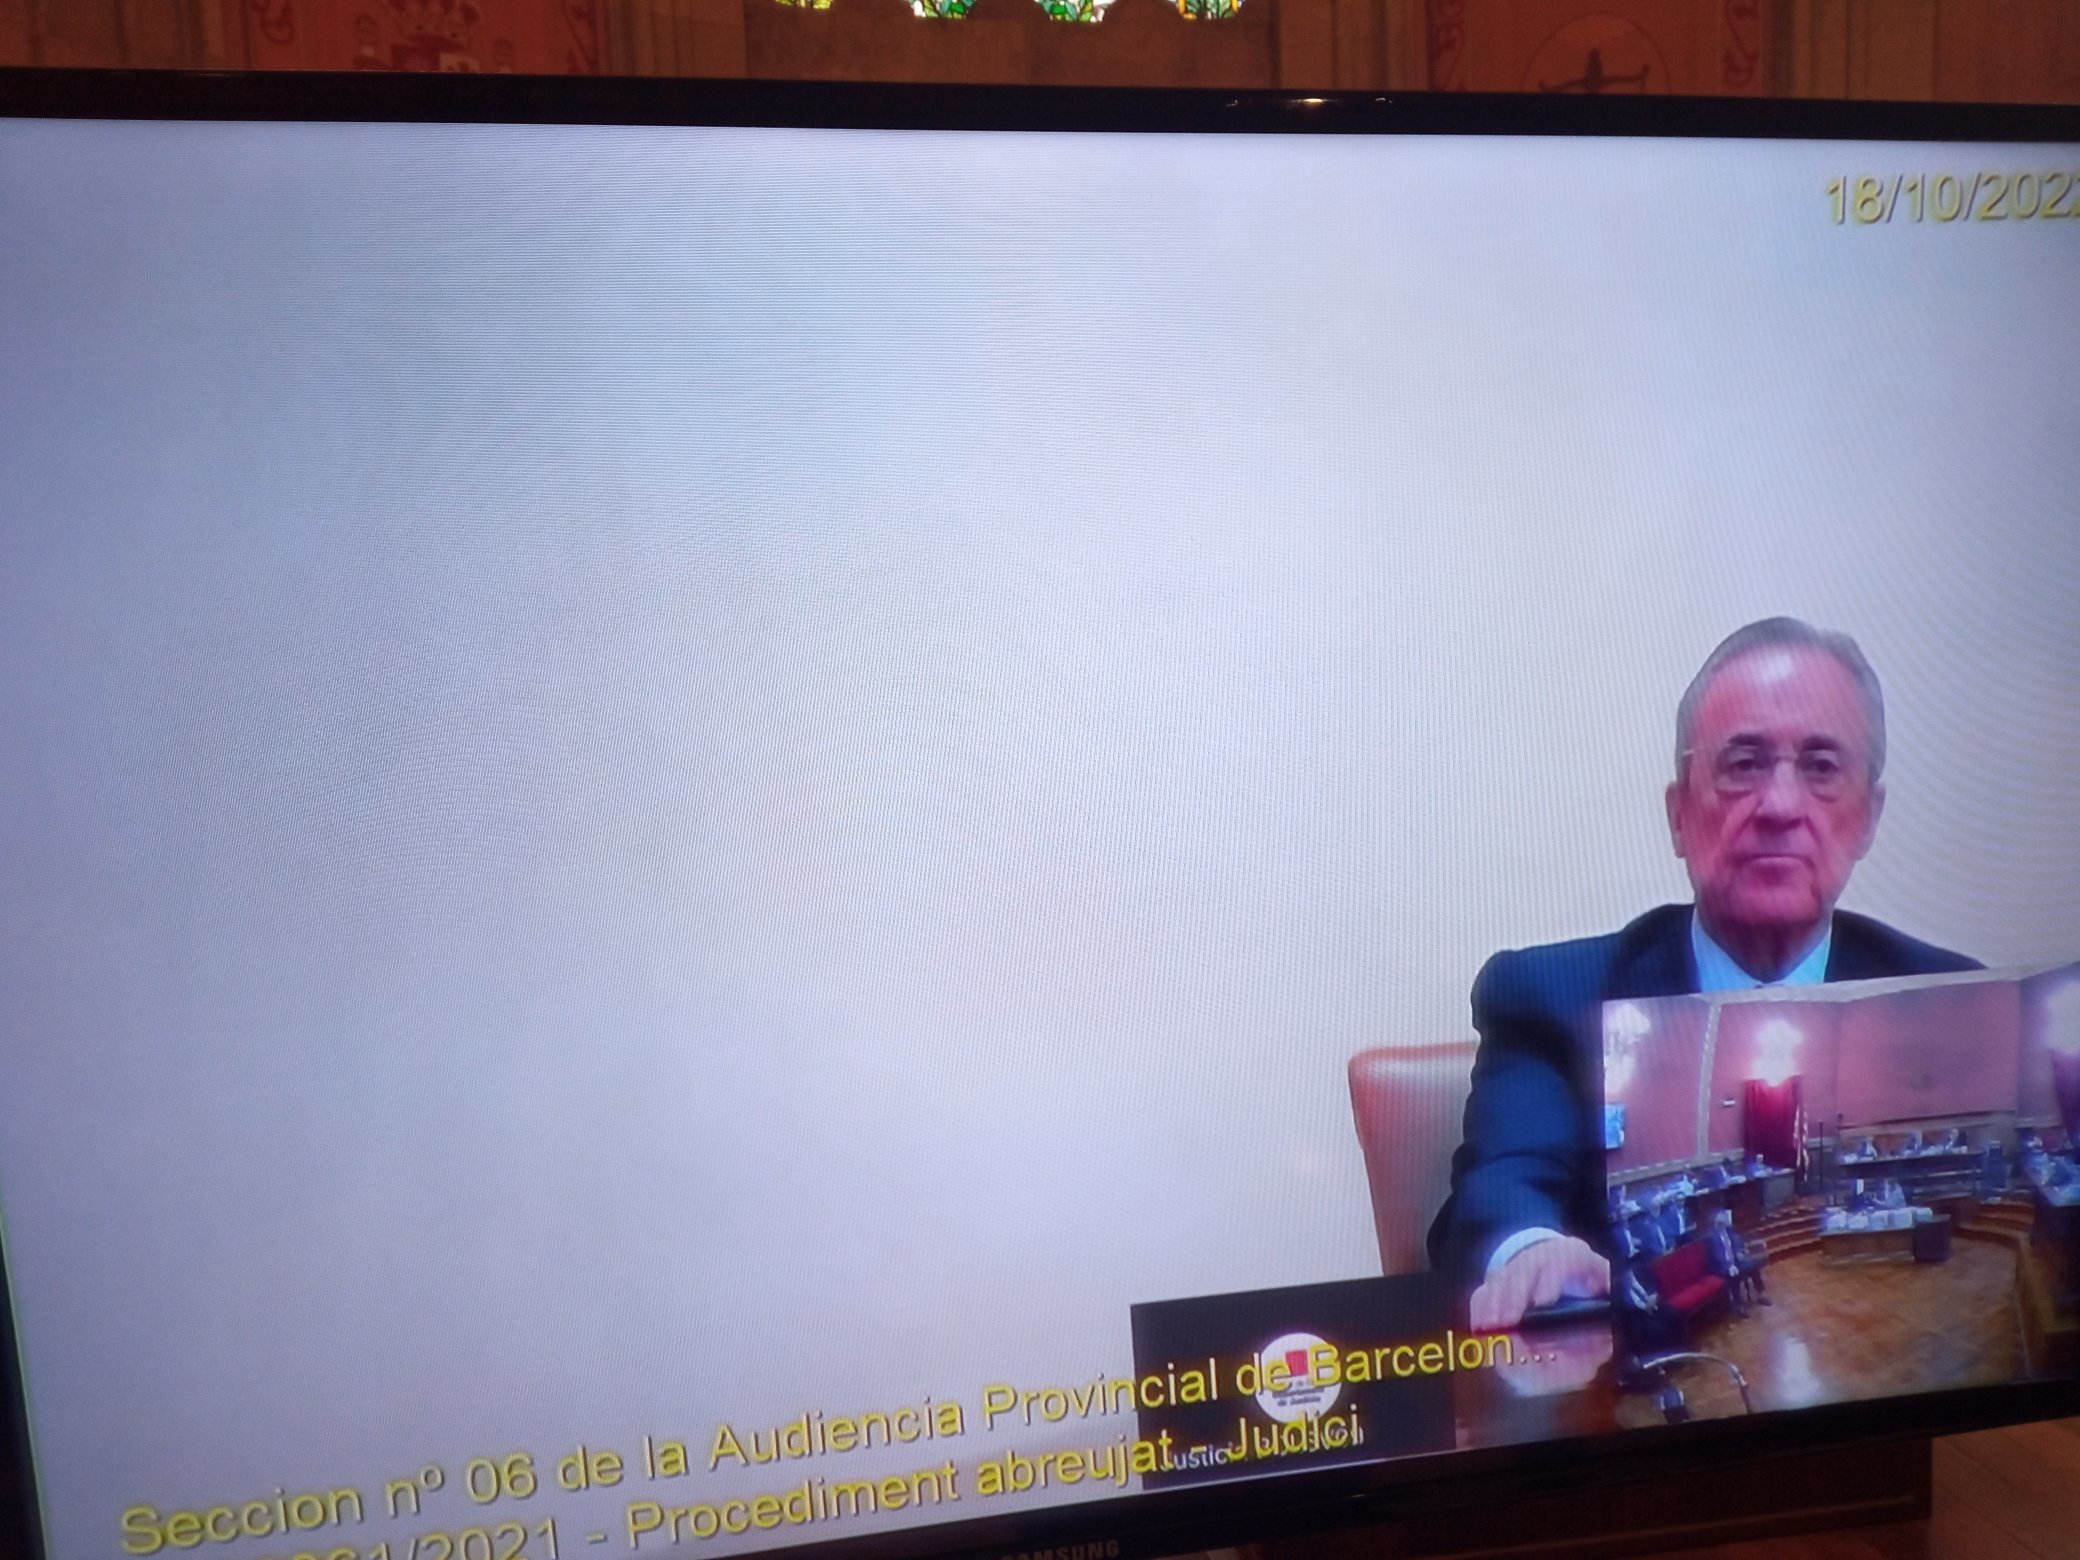 El presidente del Madrid declar por videoconferencia